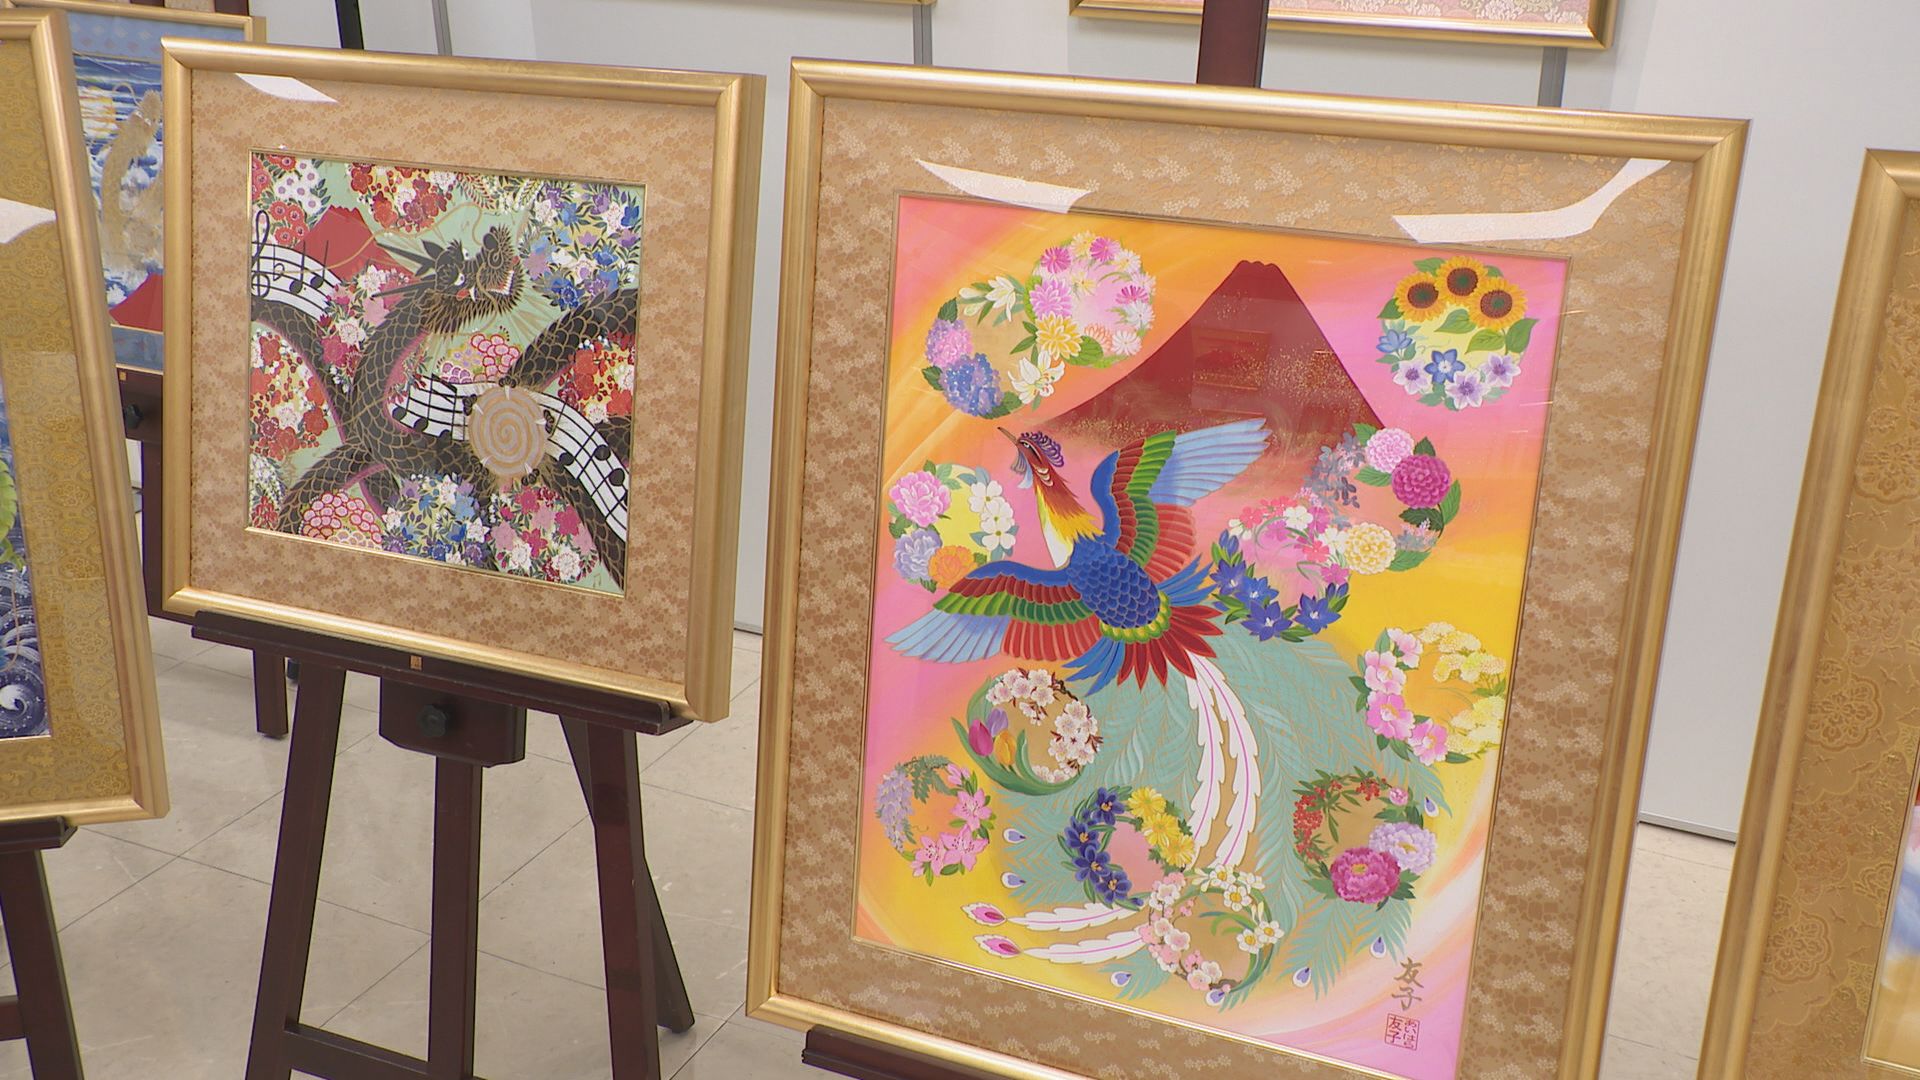 赤富士”を描いた作品が特徴 あいはら友子さんの絵画展 今年で周年